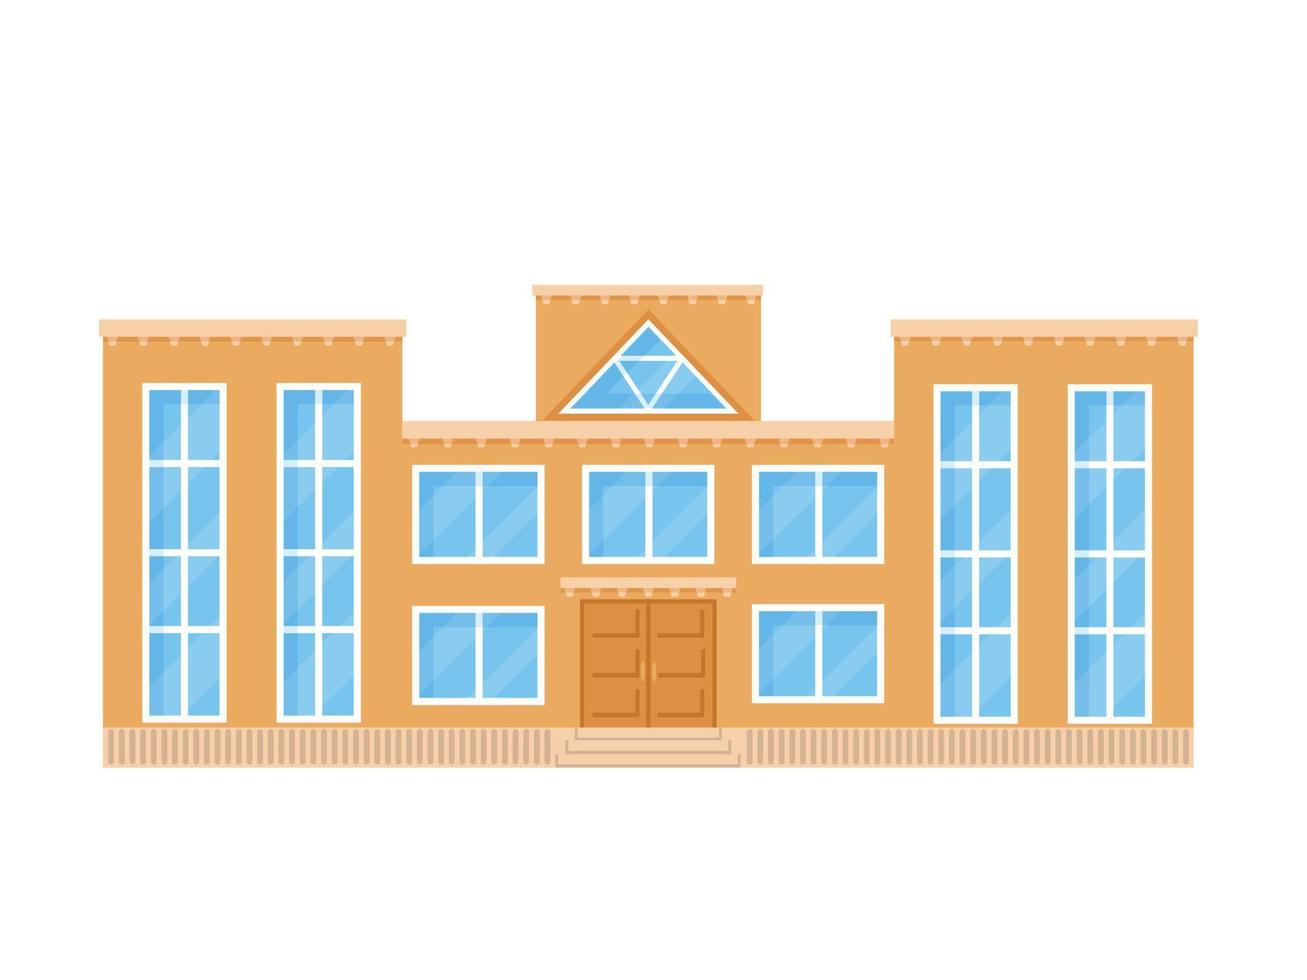 prédio da escola em estilo simples. ilustração vetorial isolada no fundo branco. vetor